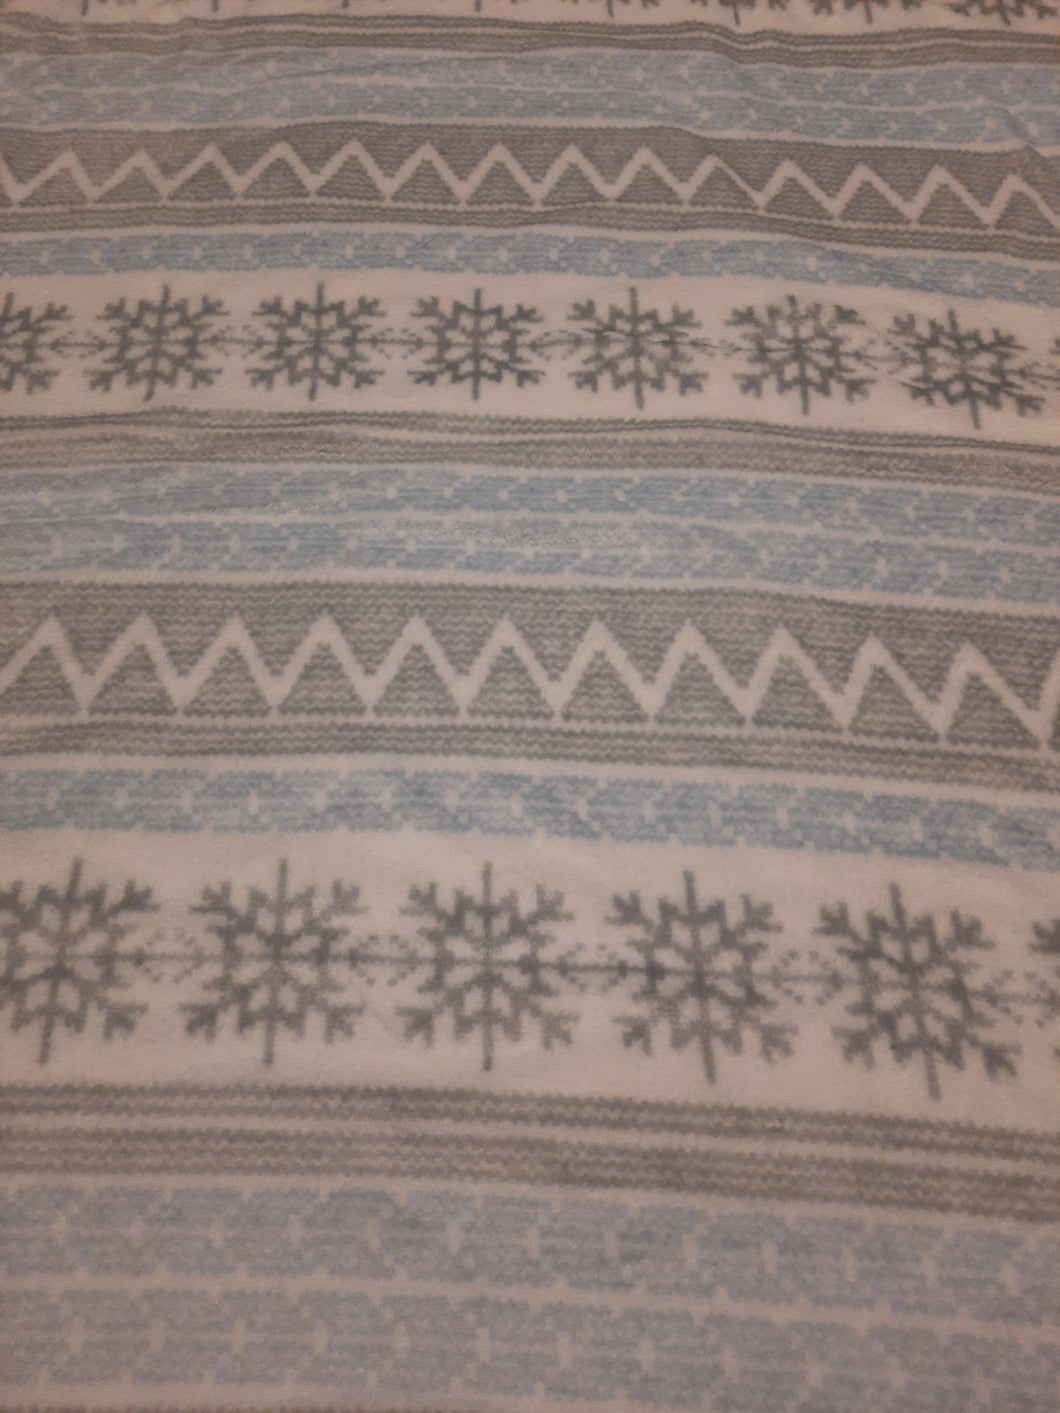 Throw Blanket - Snowflakes, Sweater Design Grey, Light Blue & White Sew Lush